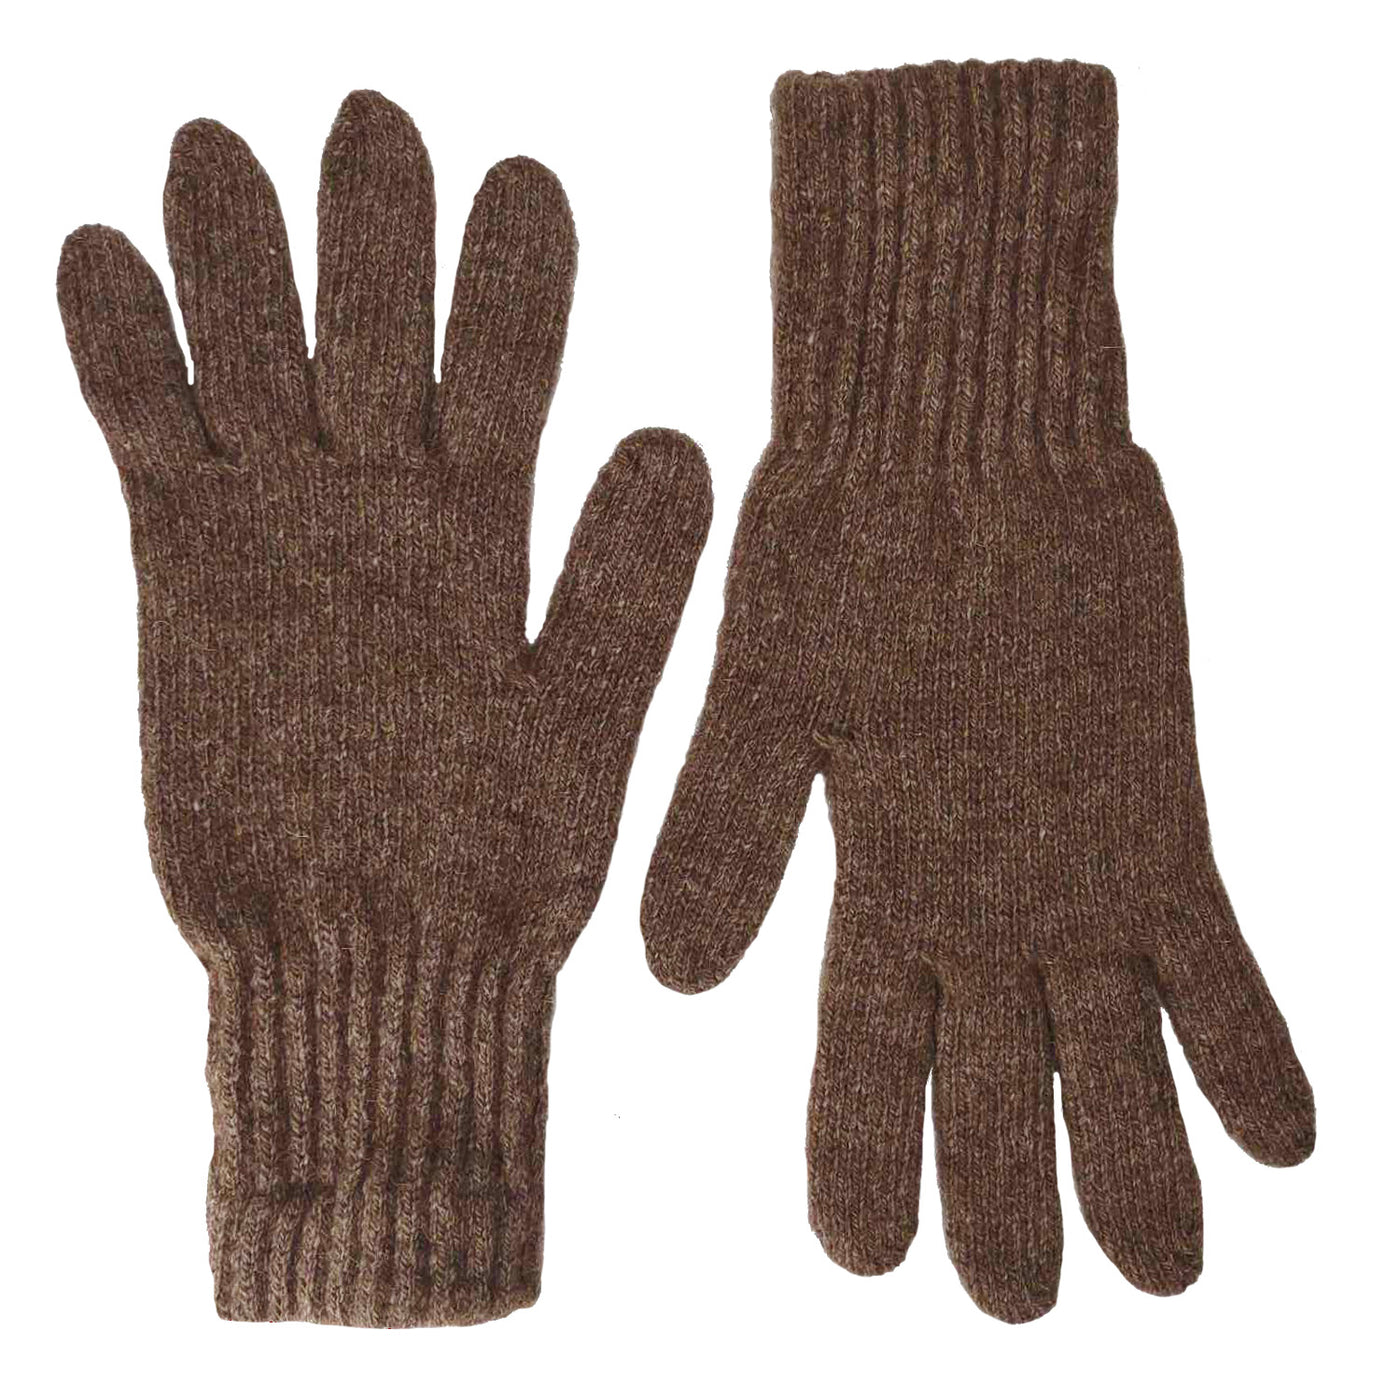 The Buffalo Wool Co. Advantage Gear Bison/Wool Gloves L